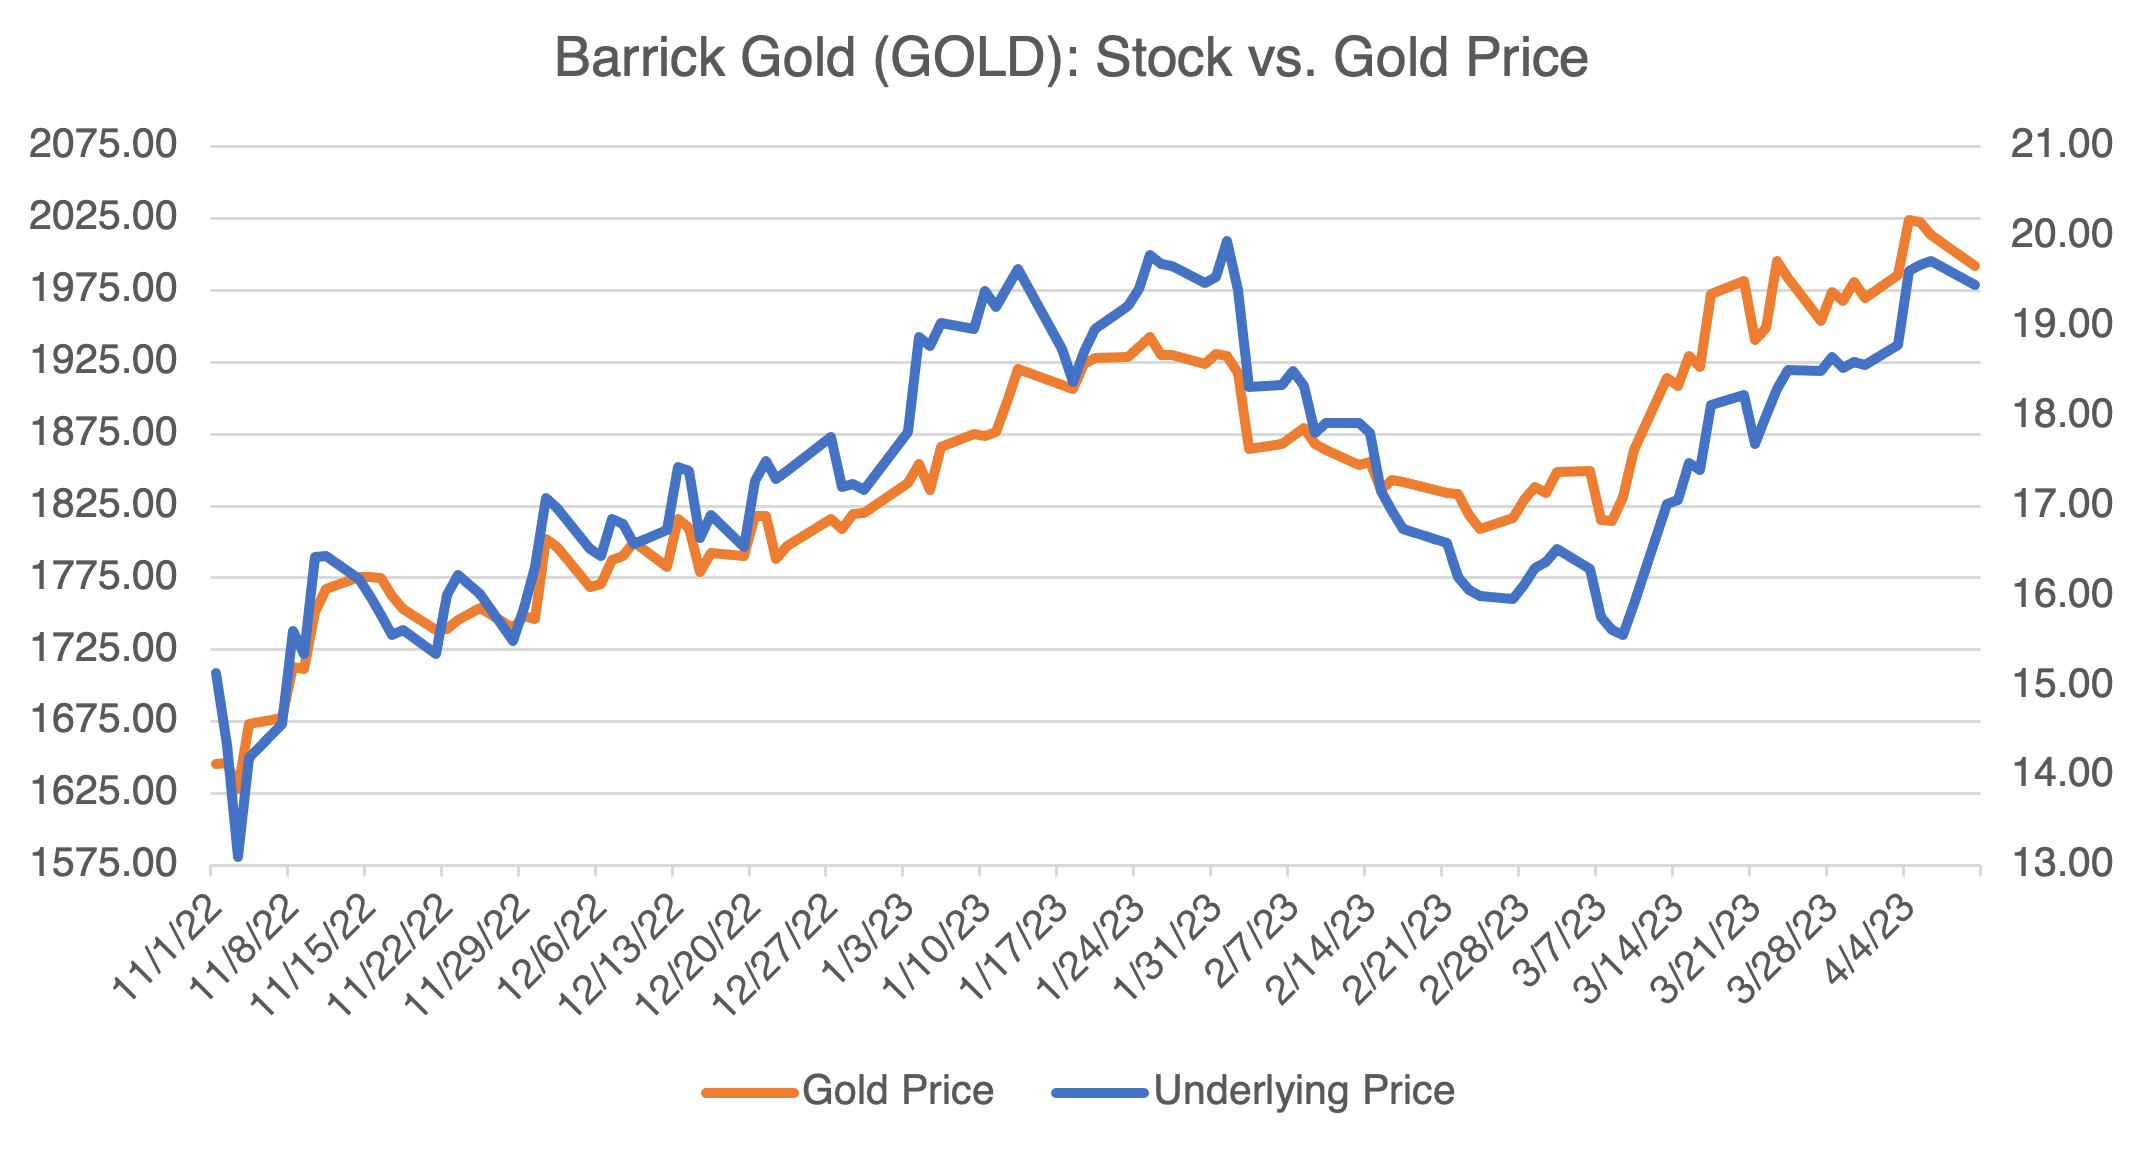 Barrick Gold Stock vs Gold Price